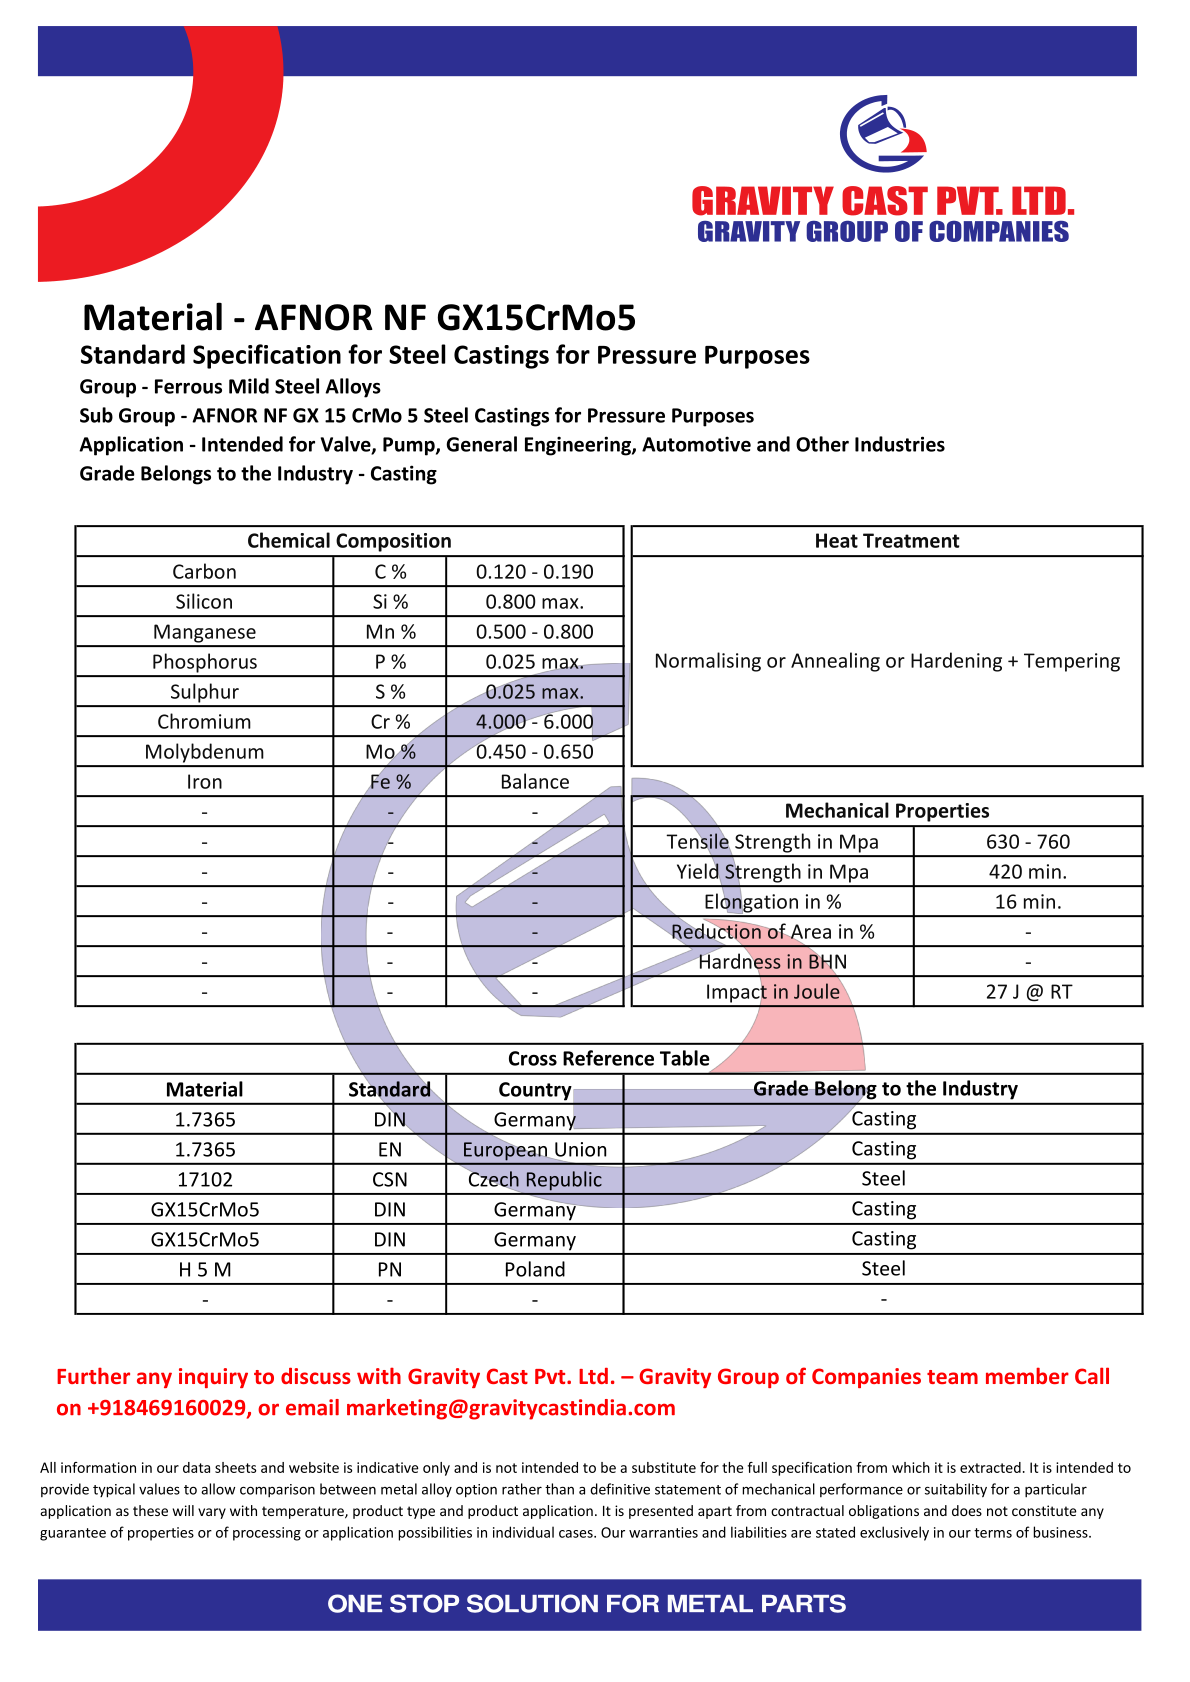 AFNOR NF GX15CrMo5.pdf